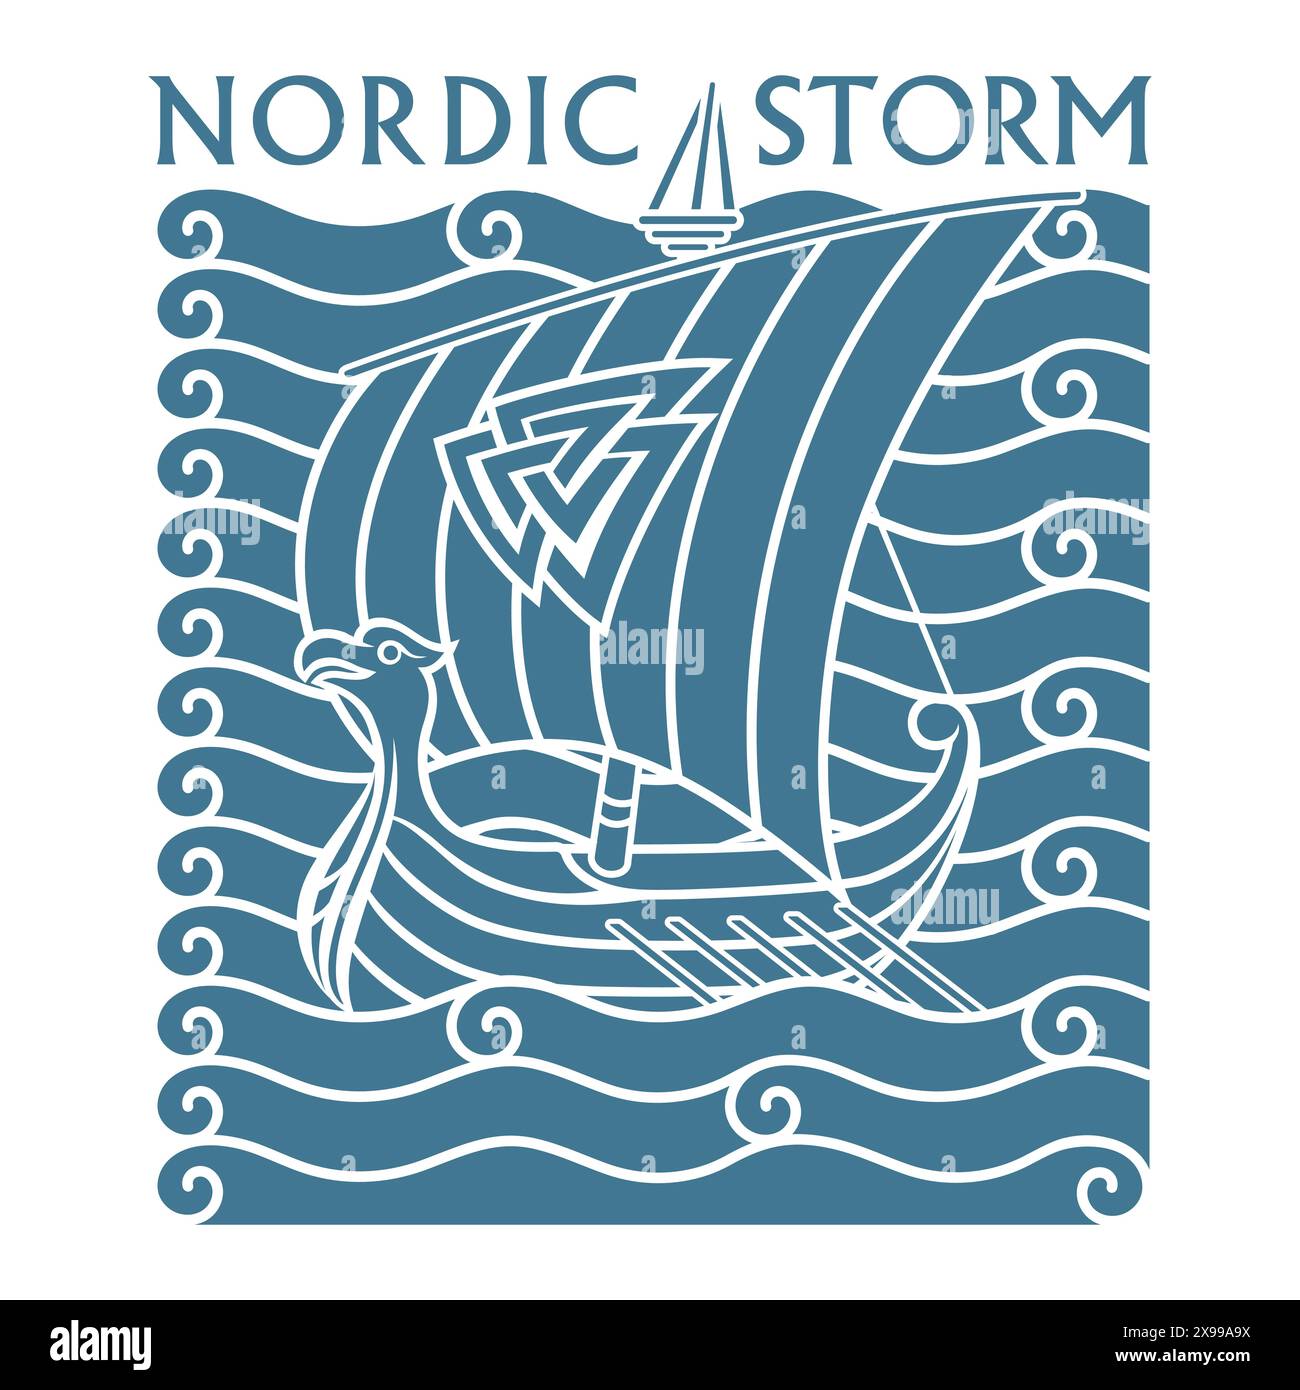 Skandinavisches Wikingerdesign. Das Wikingerschiff Drakkar segelt auf den Wellen des stürmischen Meeres Stock Vektor